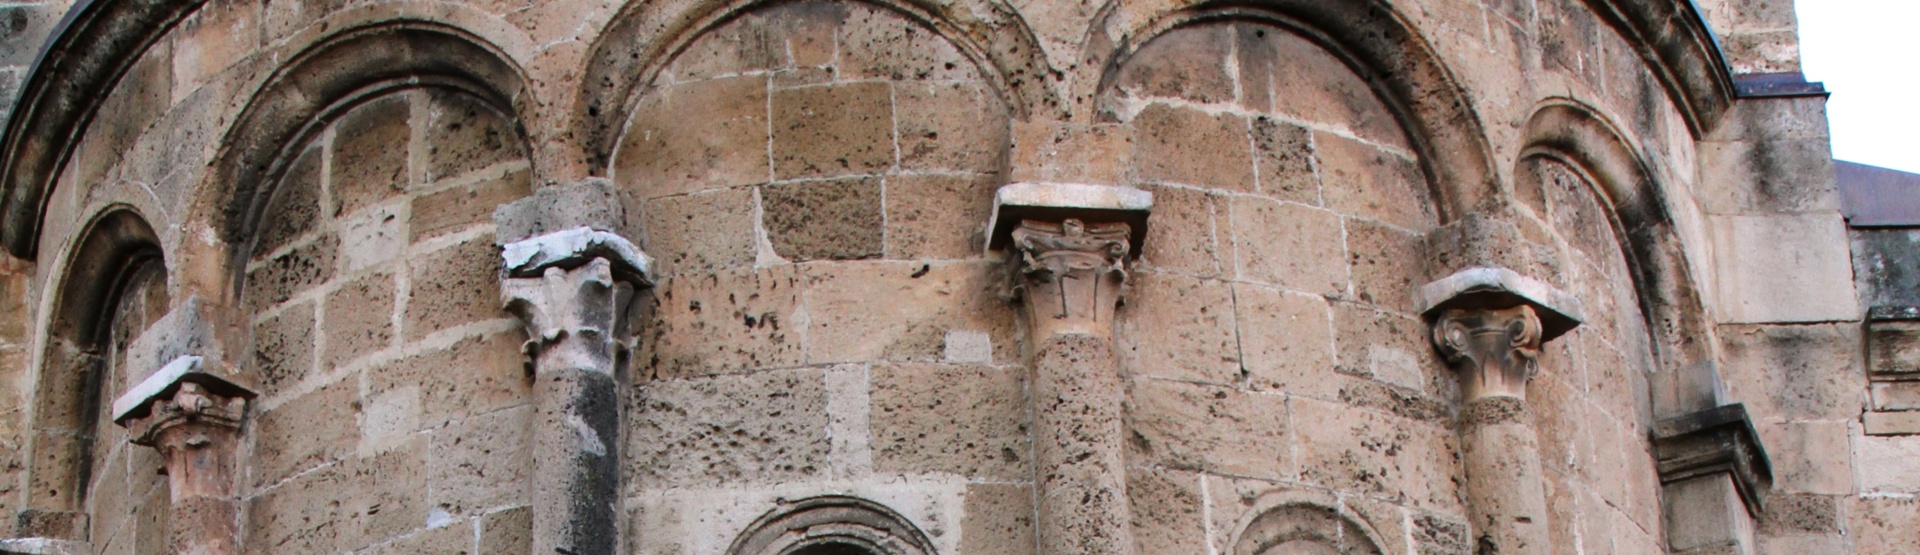 Architettura romanica della cattedrale